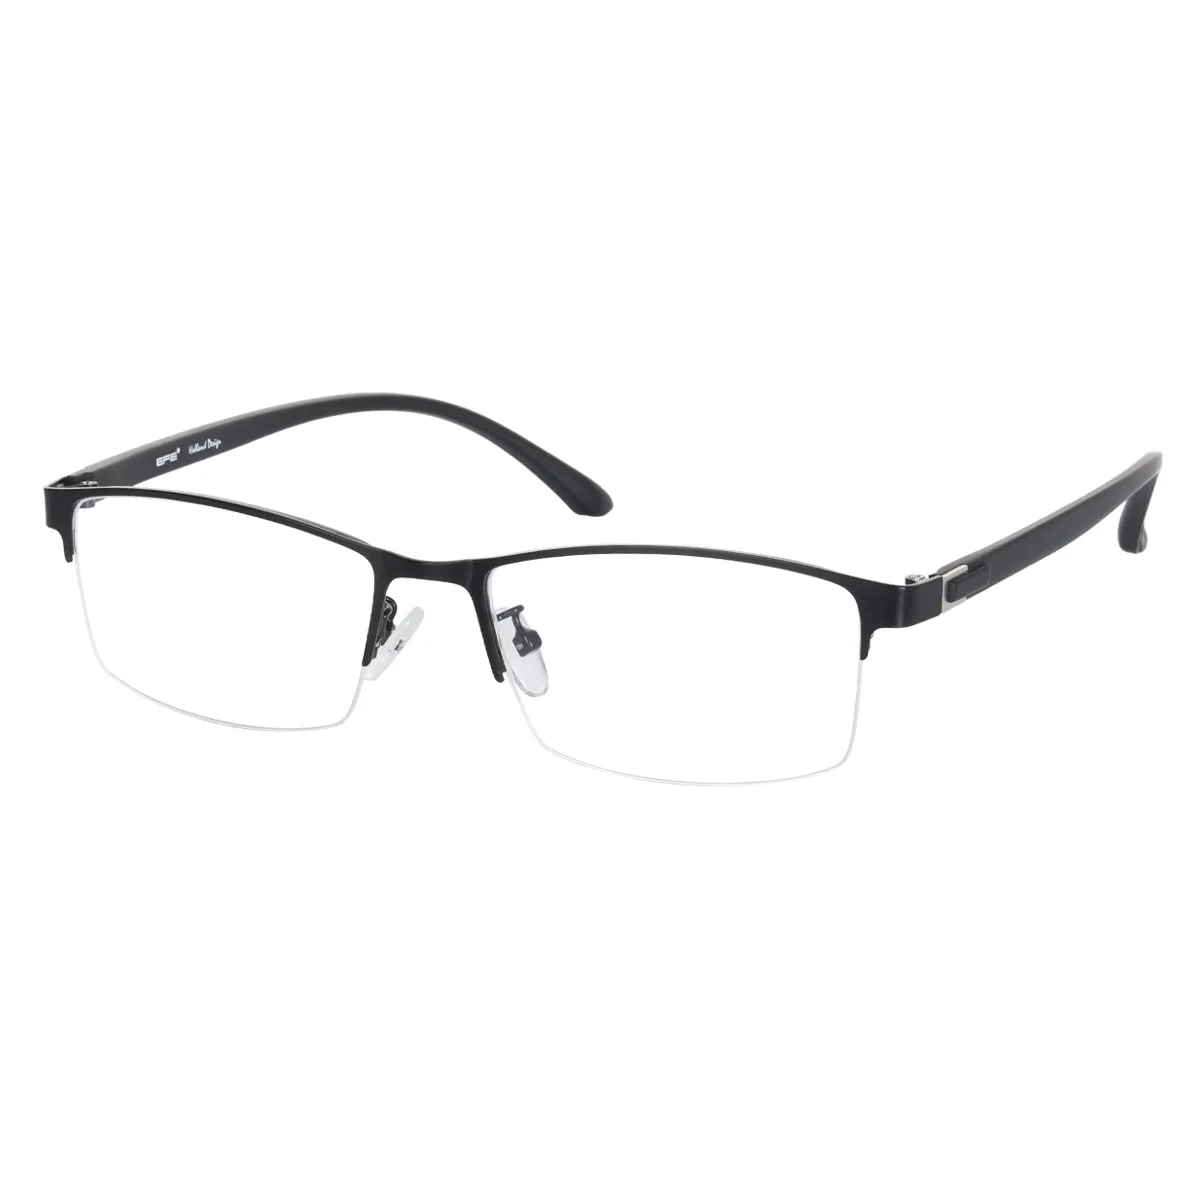 Business Rectangle Black Glasses for Men